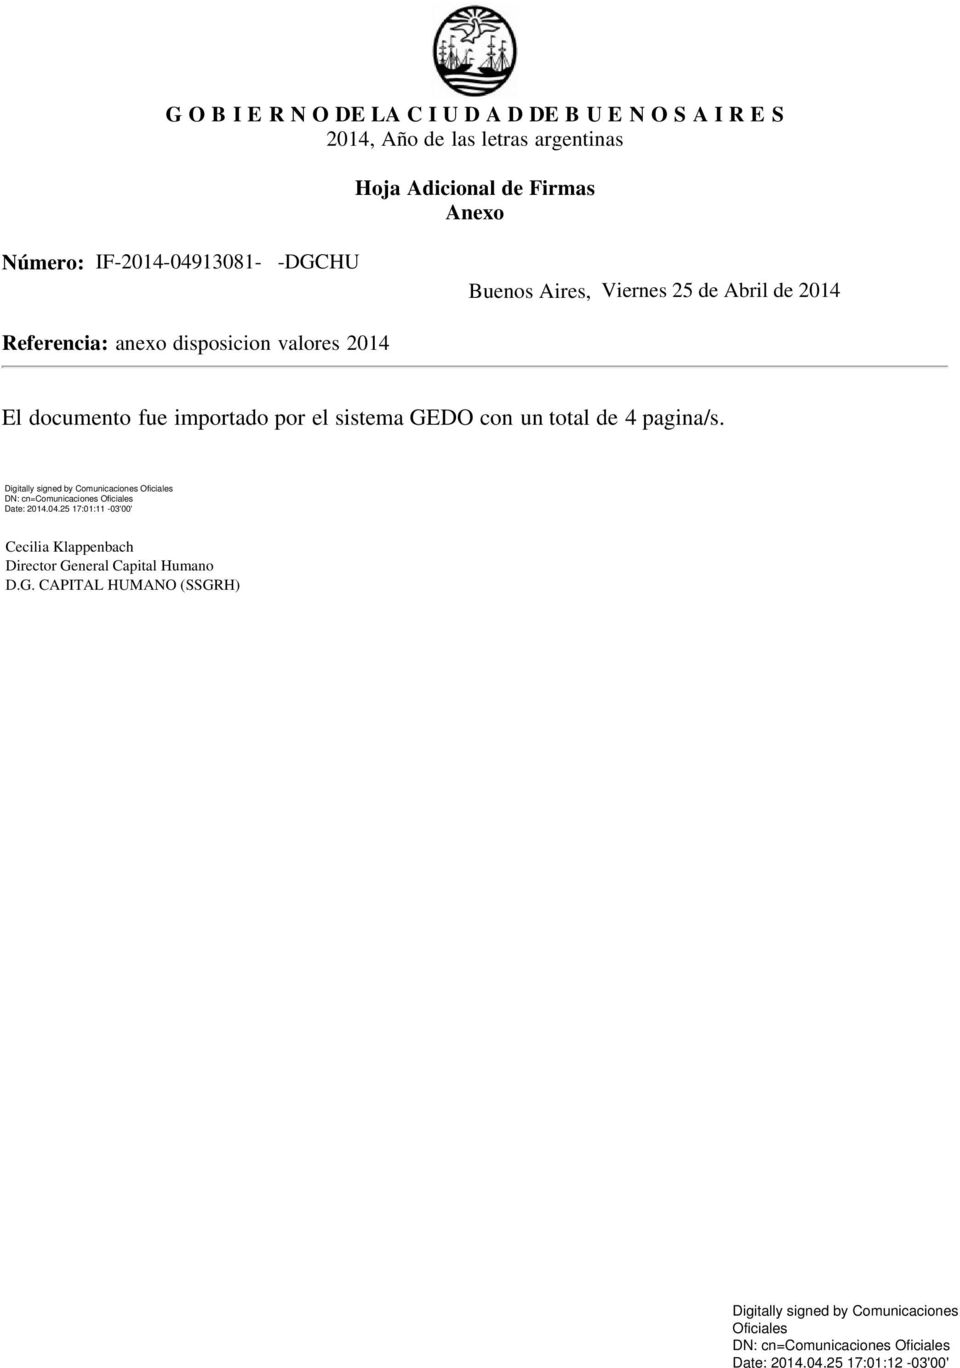 Número: Buenos Aires, Referencia: anexo disposicion valores 2014